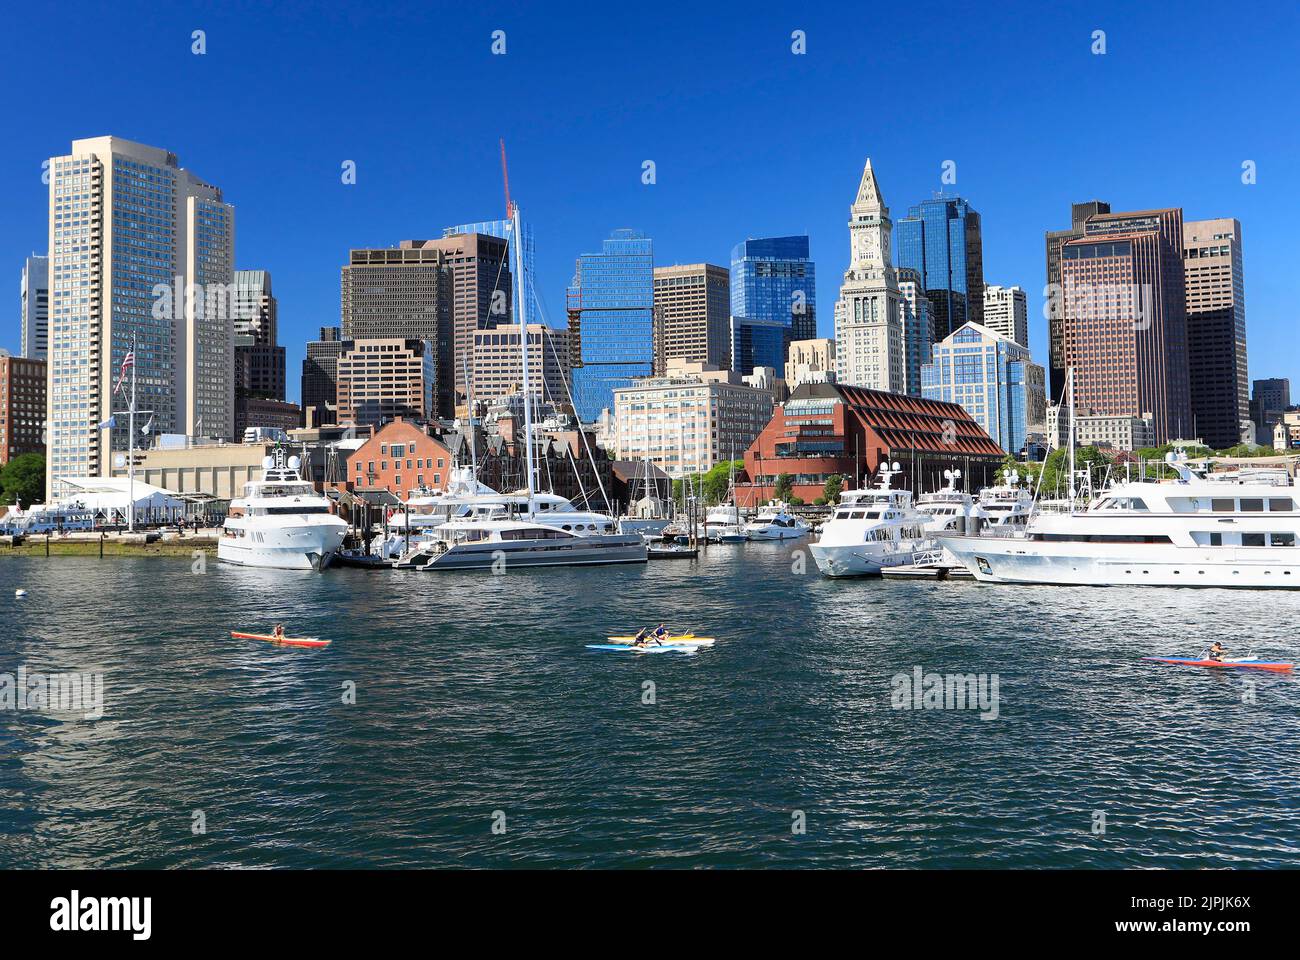 Vue sur Boston et port avec bateaux, kayaks et océan Atlantique au premier plan, USA Banque D'Images